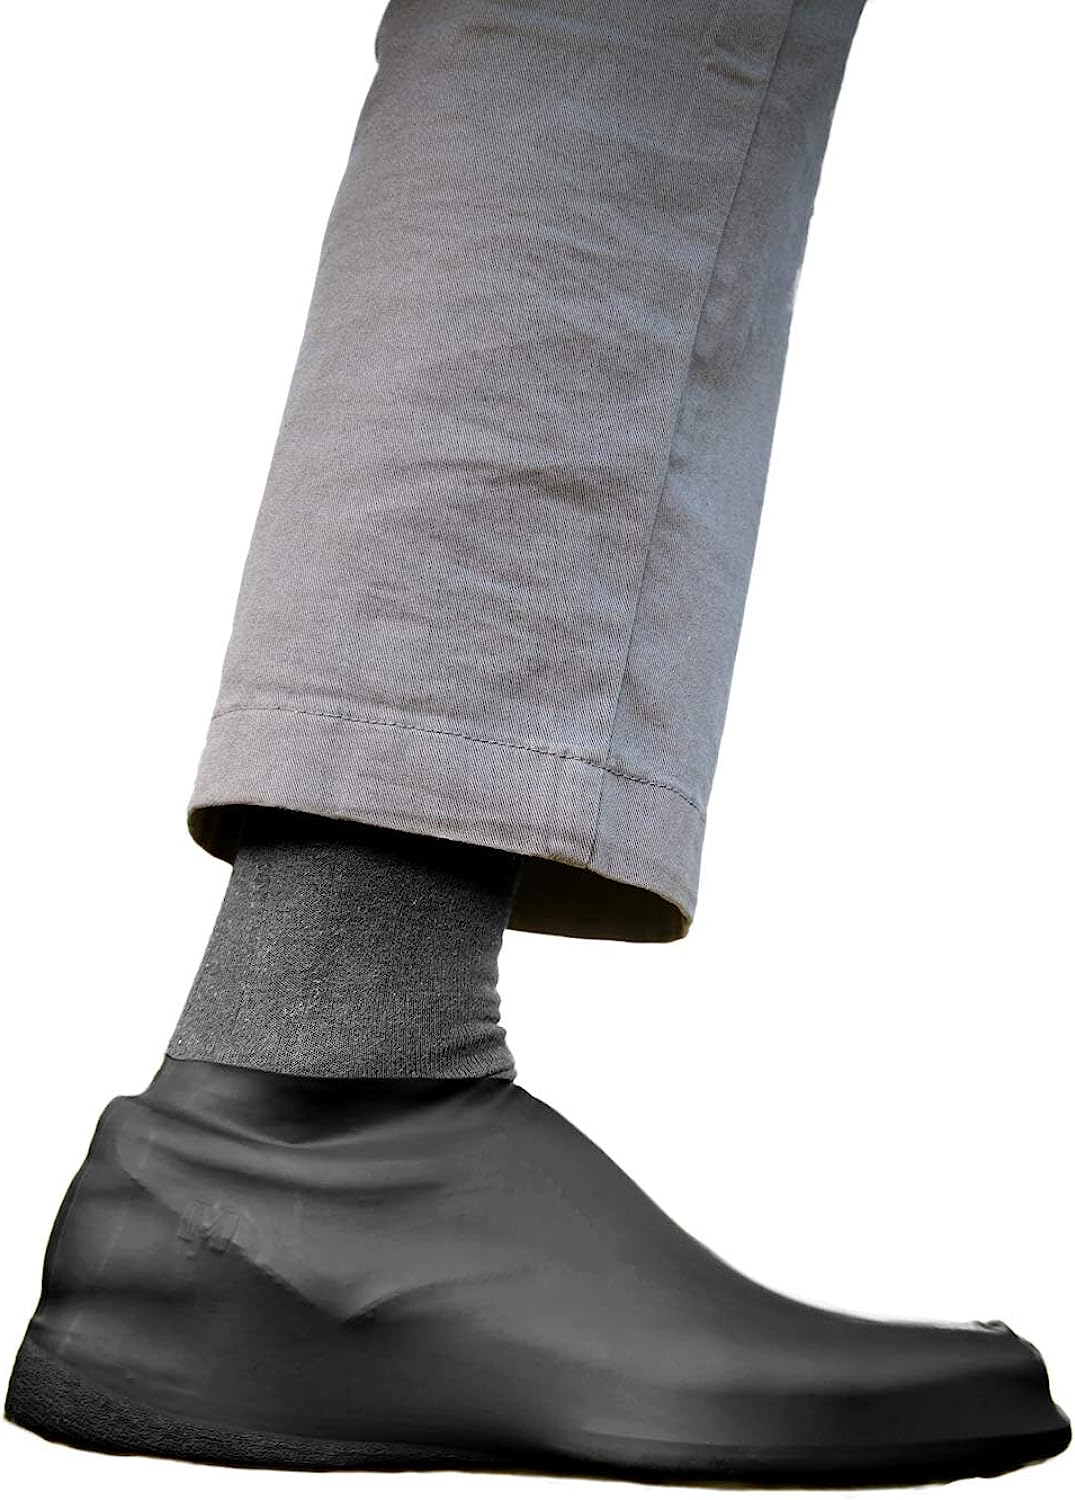 veloToze Roam - Waterproof Shoe Covers, Reusable for [...]